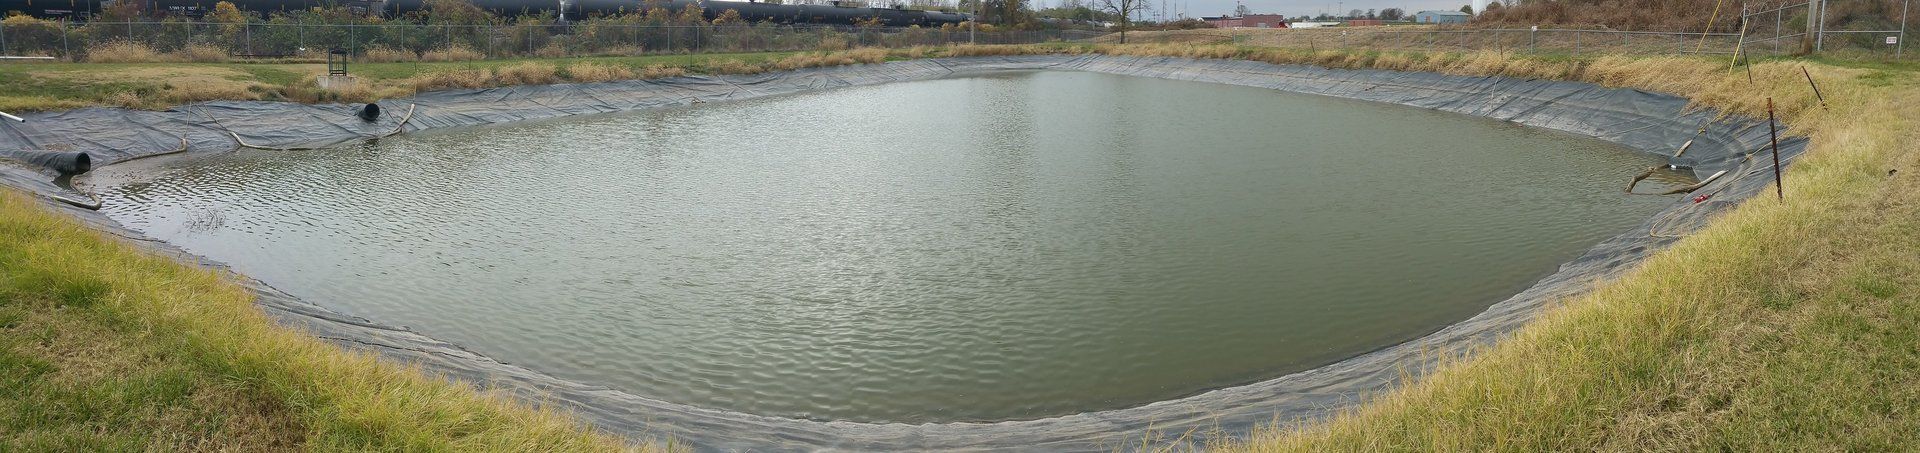 Retaining Pond